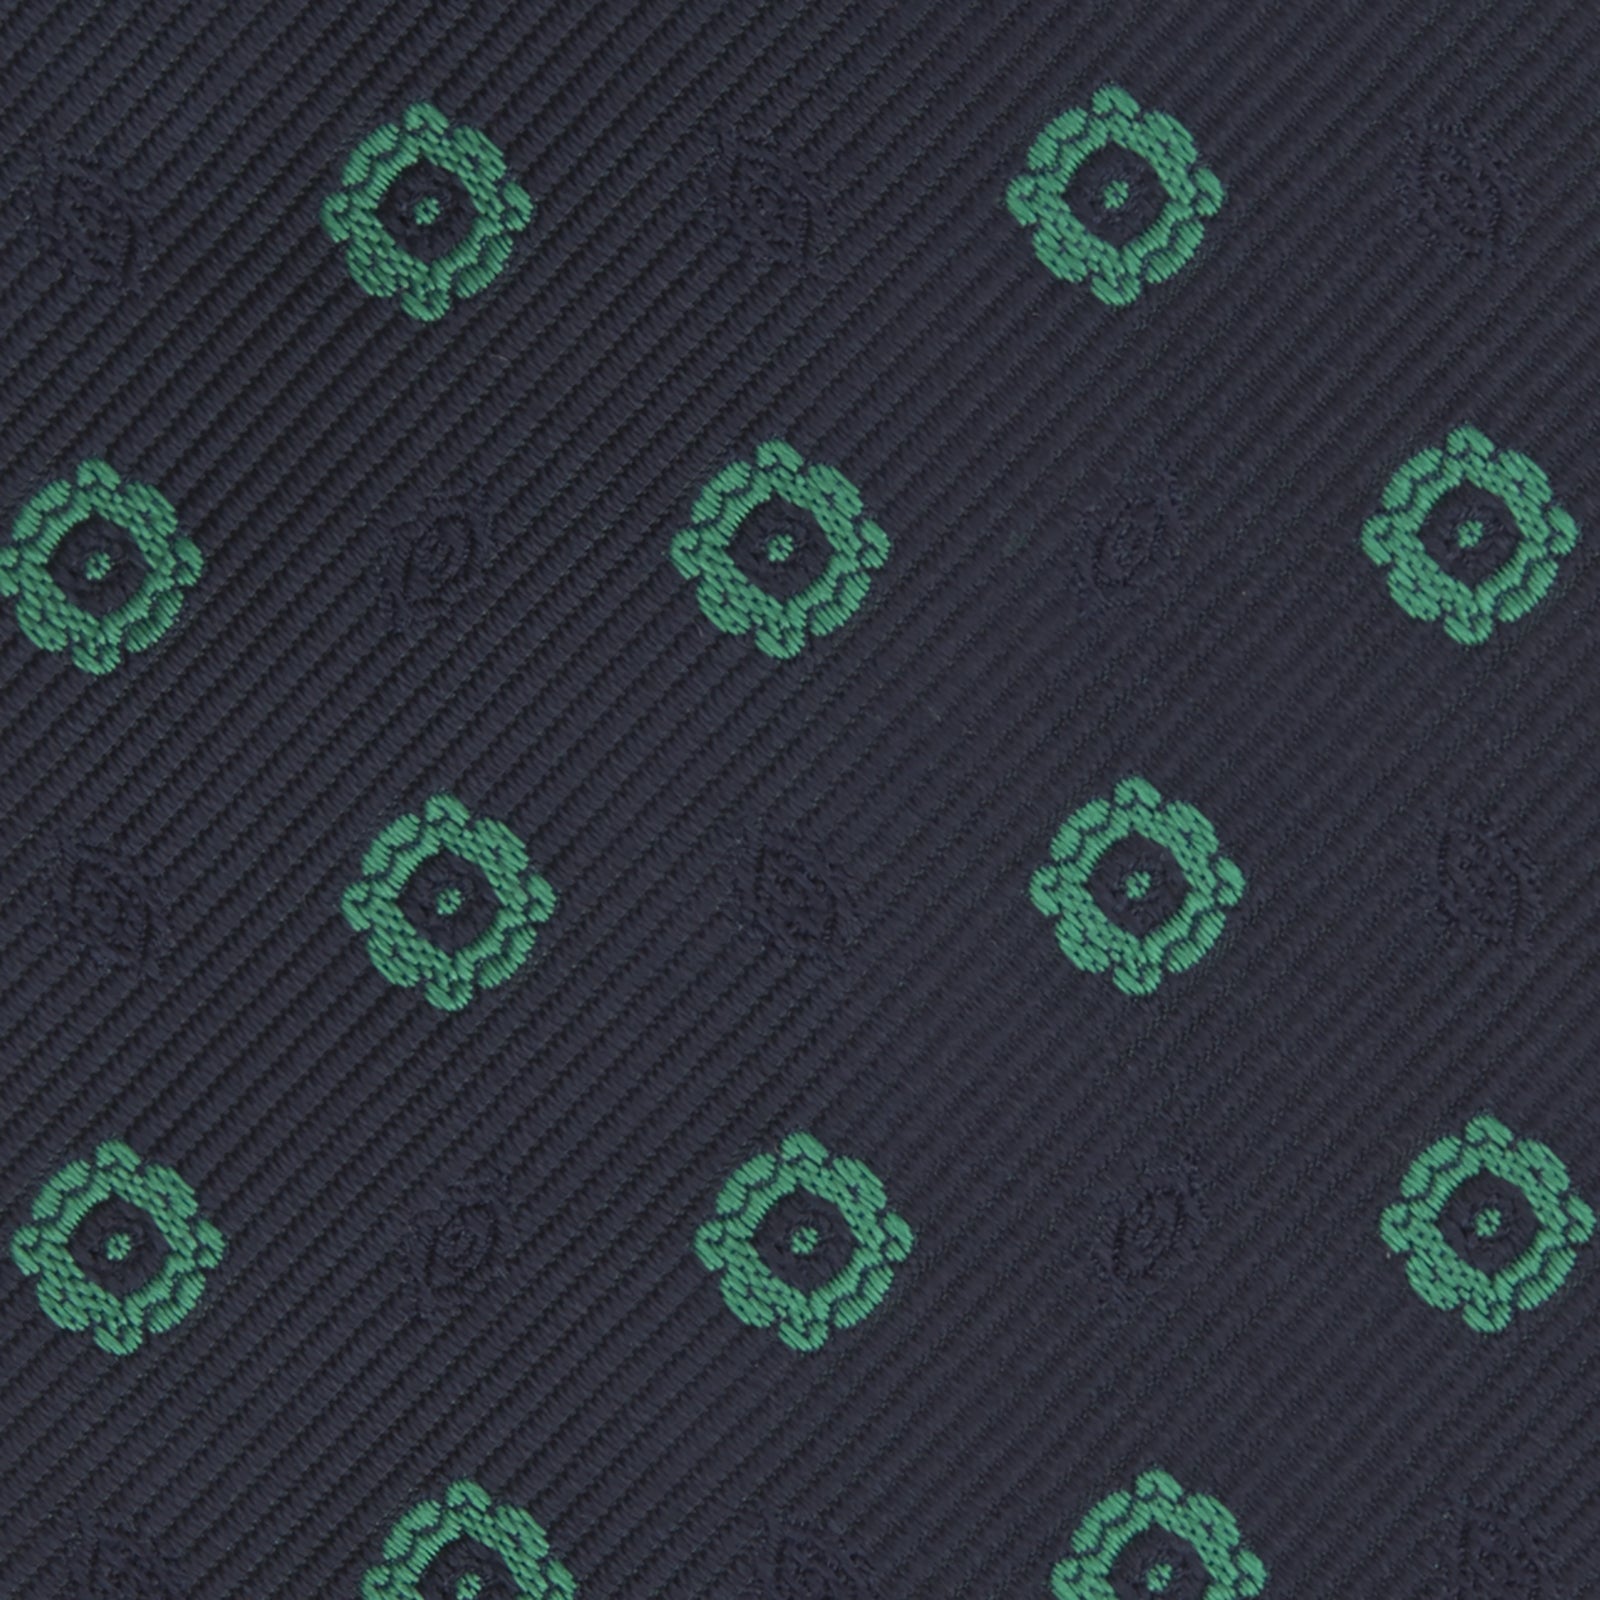 Navy and Green Emblem Spot Silk Tie